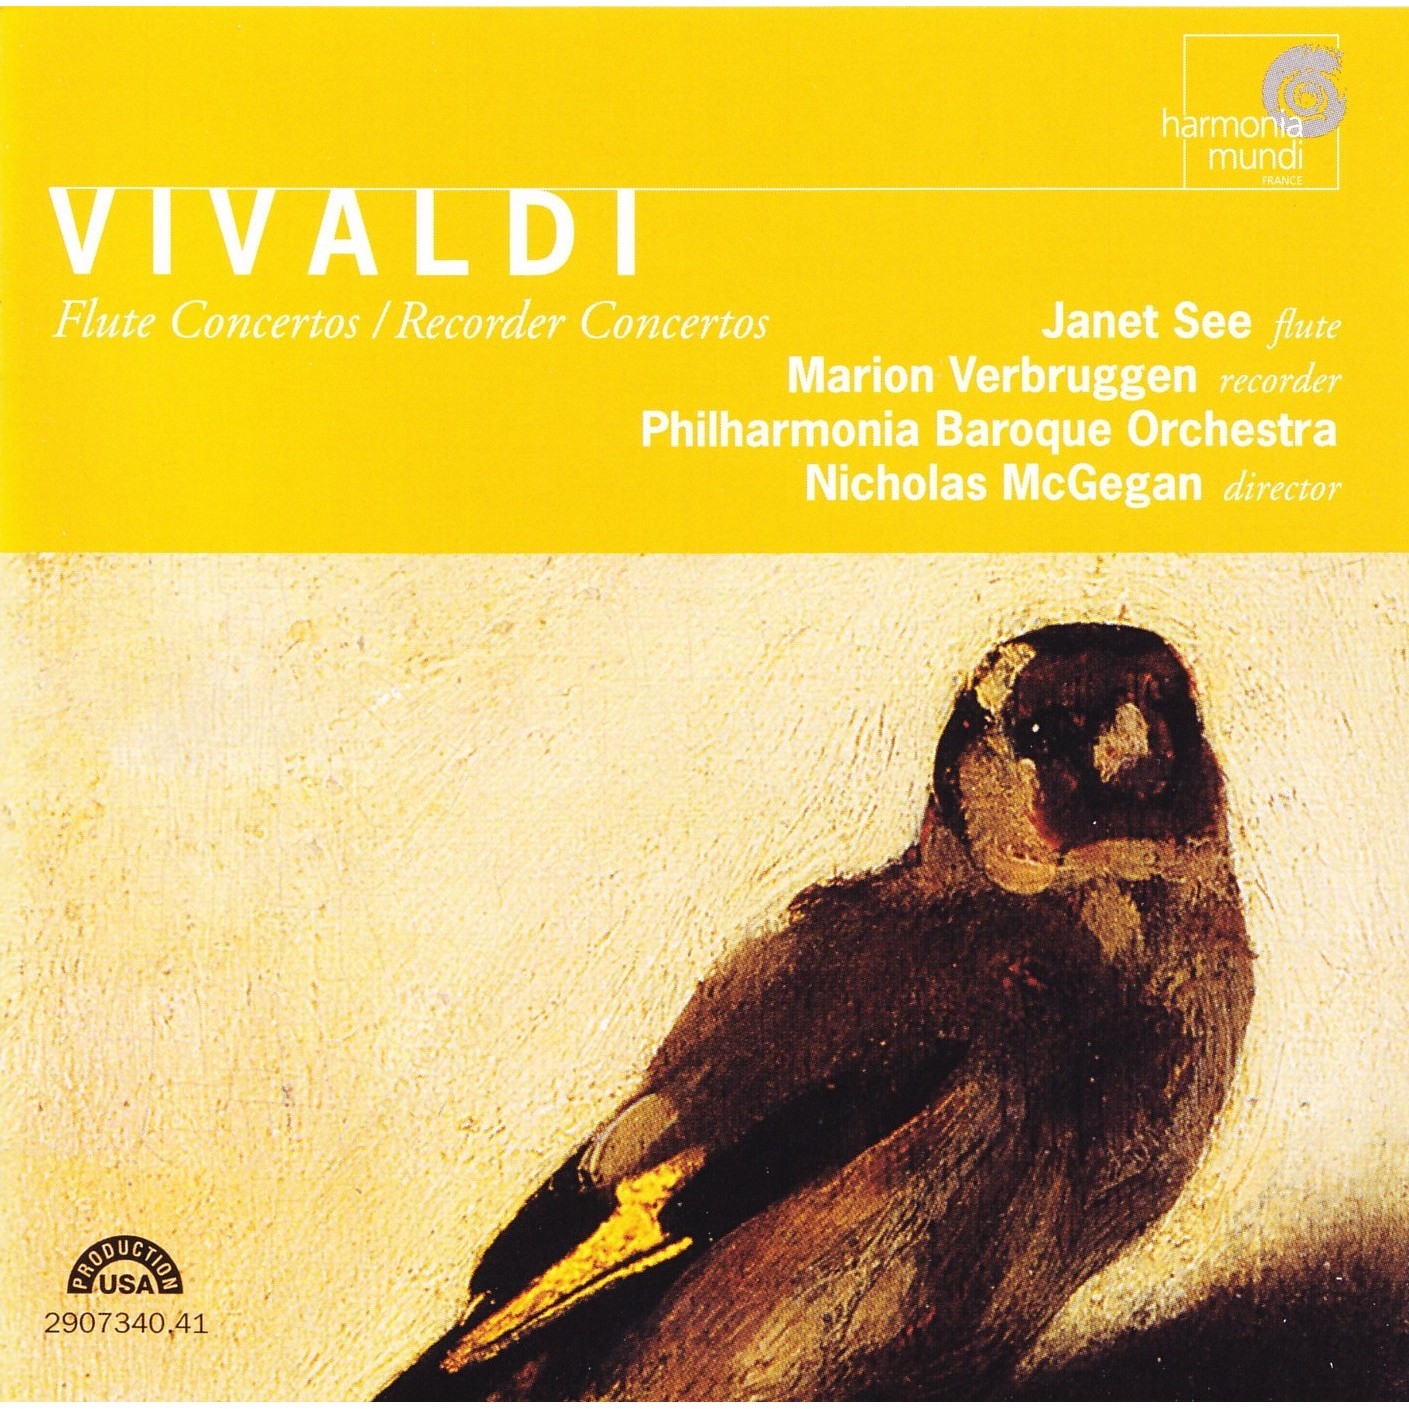 Vivaldi - Recorder Concertos. A.Vivaldi_ Recorder Concertos обложка. Vivaldi - Recorder Concertos danlaurin. Flute concertos